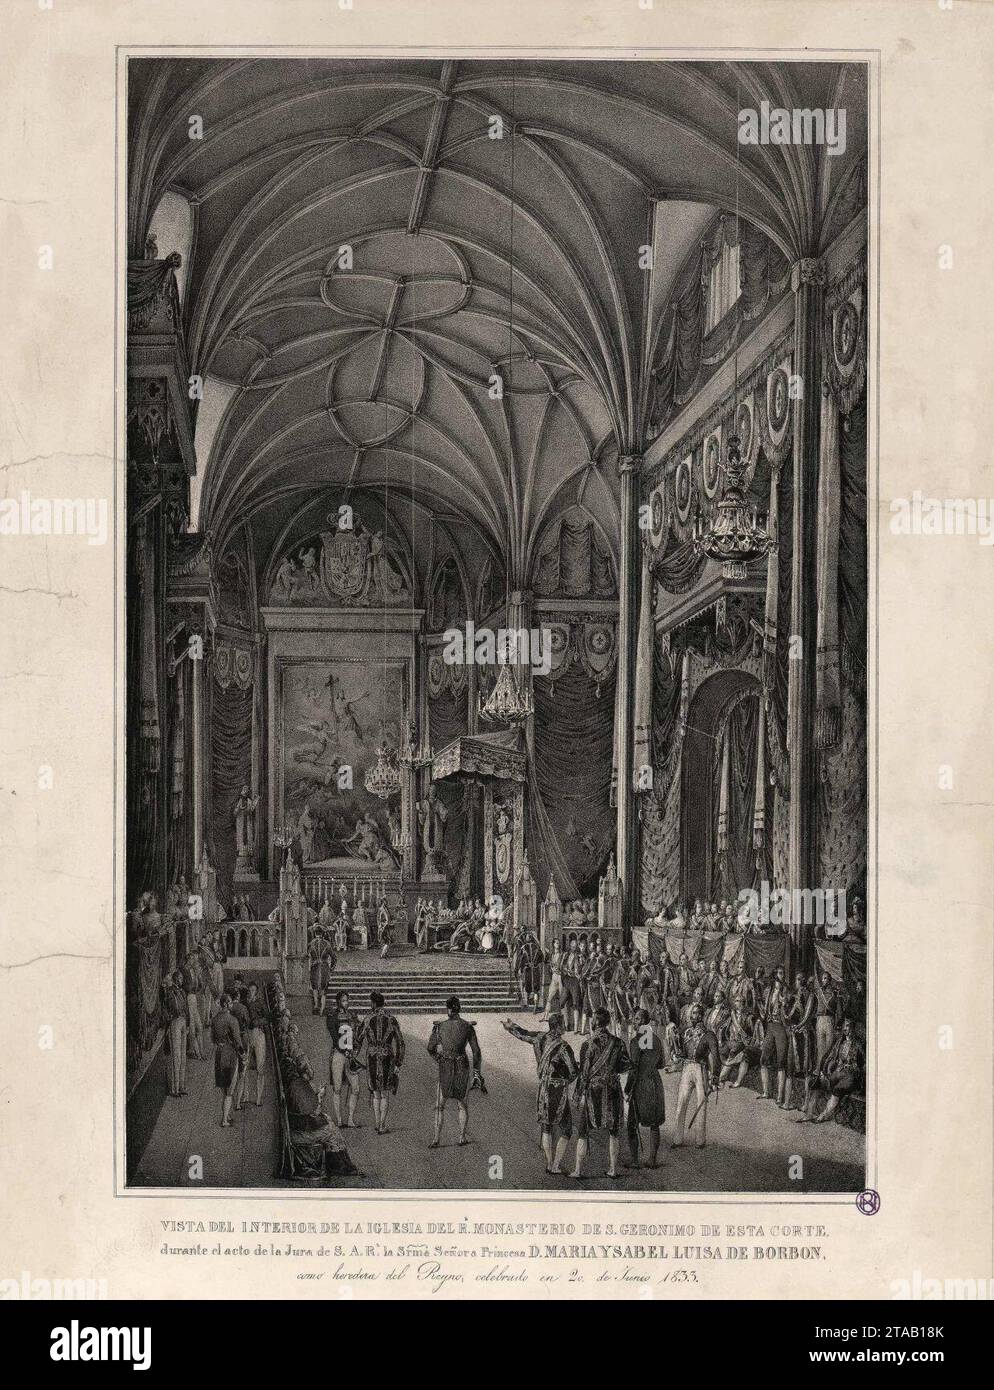 Vista del interior de la iglesia de real monasterio de San Jerónimo de esta corte durante el acto de la Jura de S.A.R.. la Srma. Señora Princesa D. maría Isabel Luisa de Borbón. Stock Photo